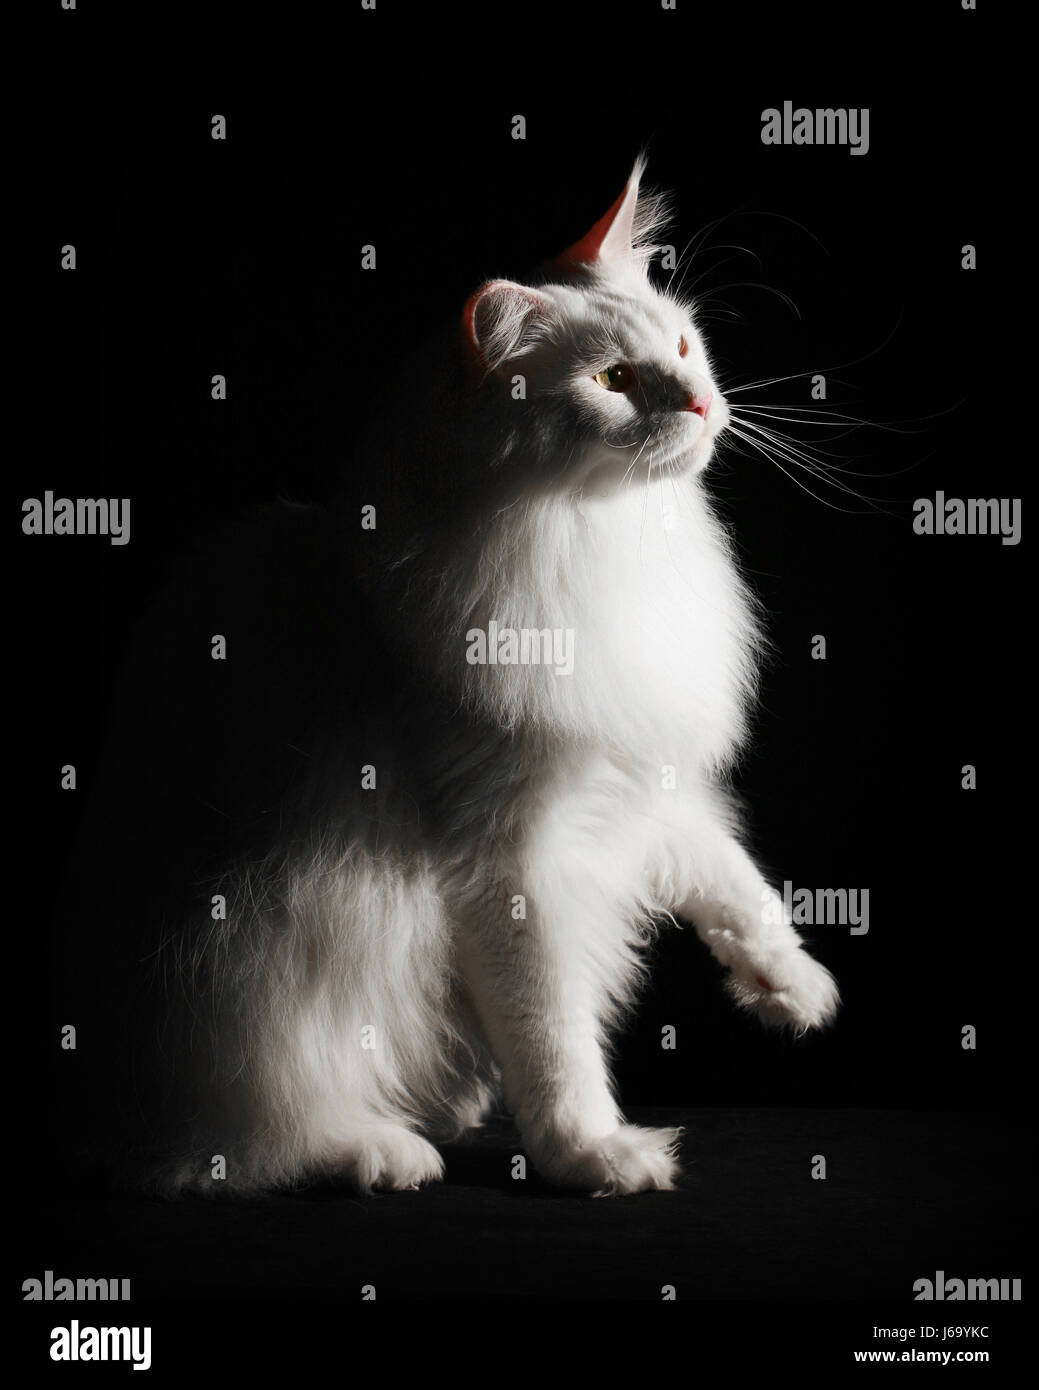 Jetblack basané noir contraste blanc noir profond yeux jetant un coup d'oeil les oreilles de chats Banque D'Images